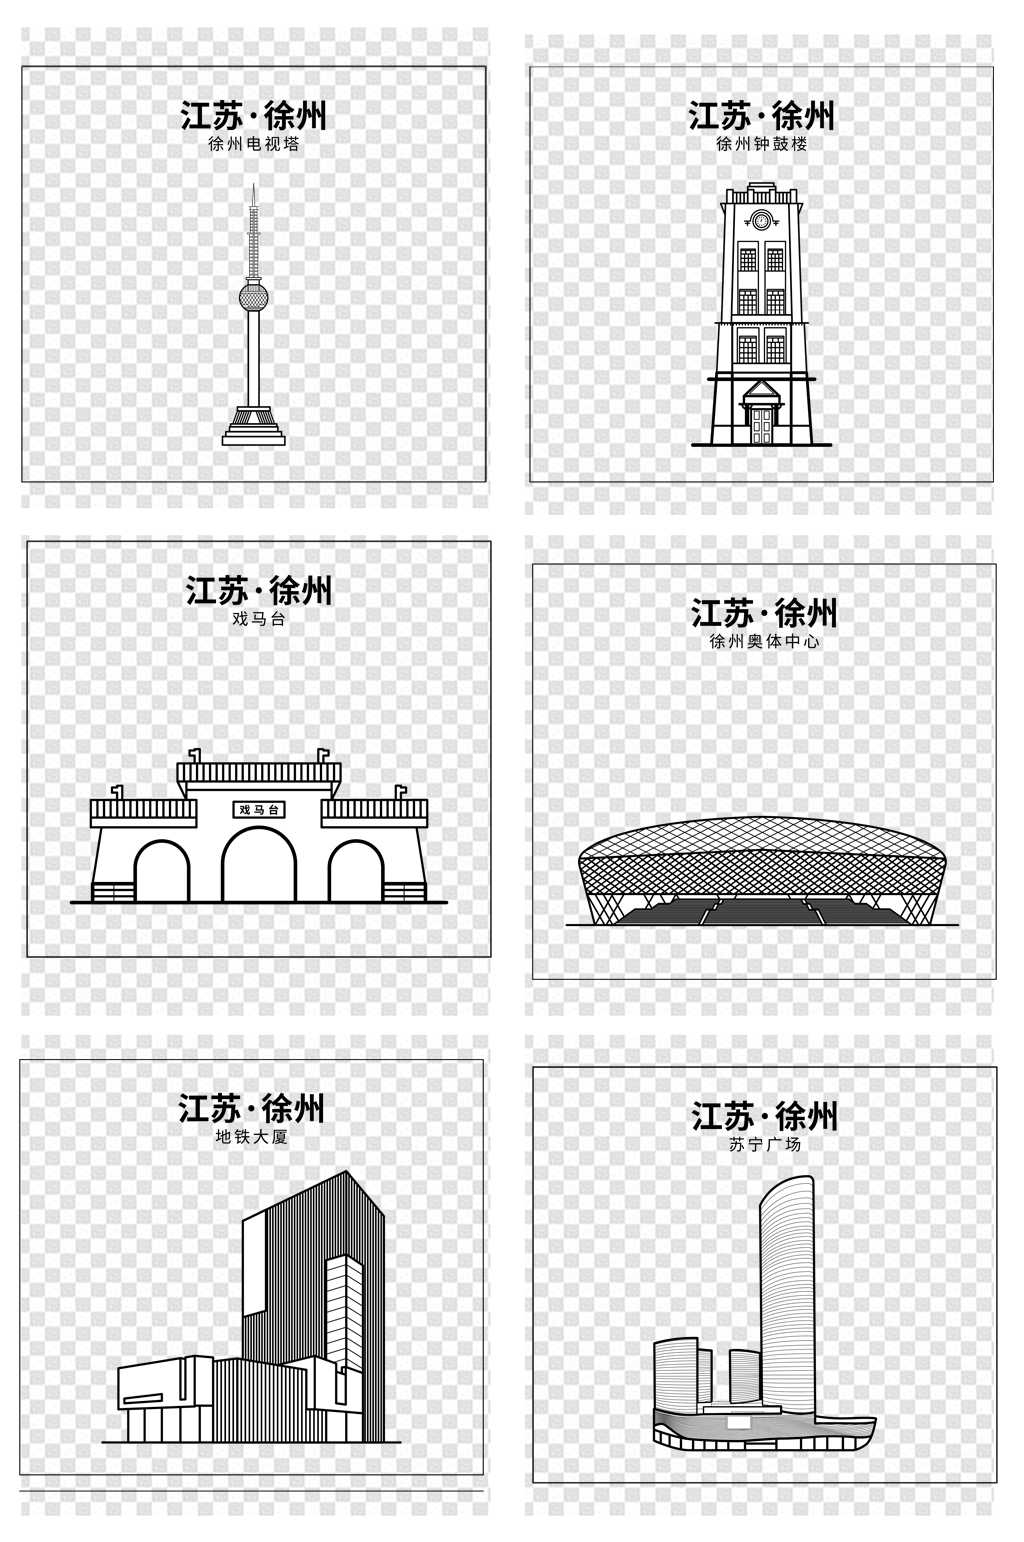 手绘徐州城市素描建筑线稿立即下载手绘简洁线描城市建筑矢量素材立即